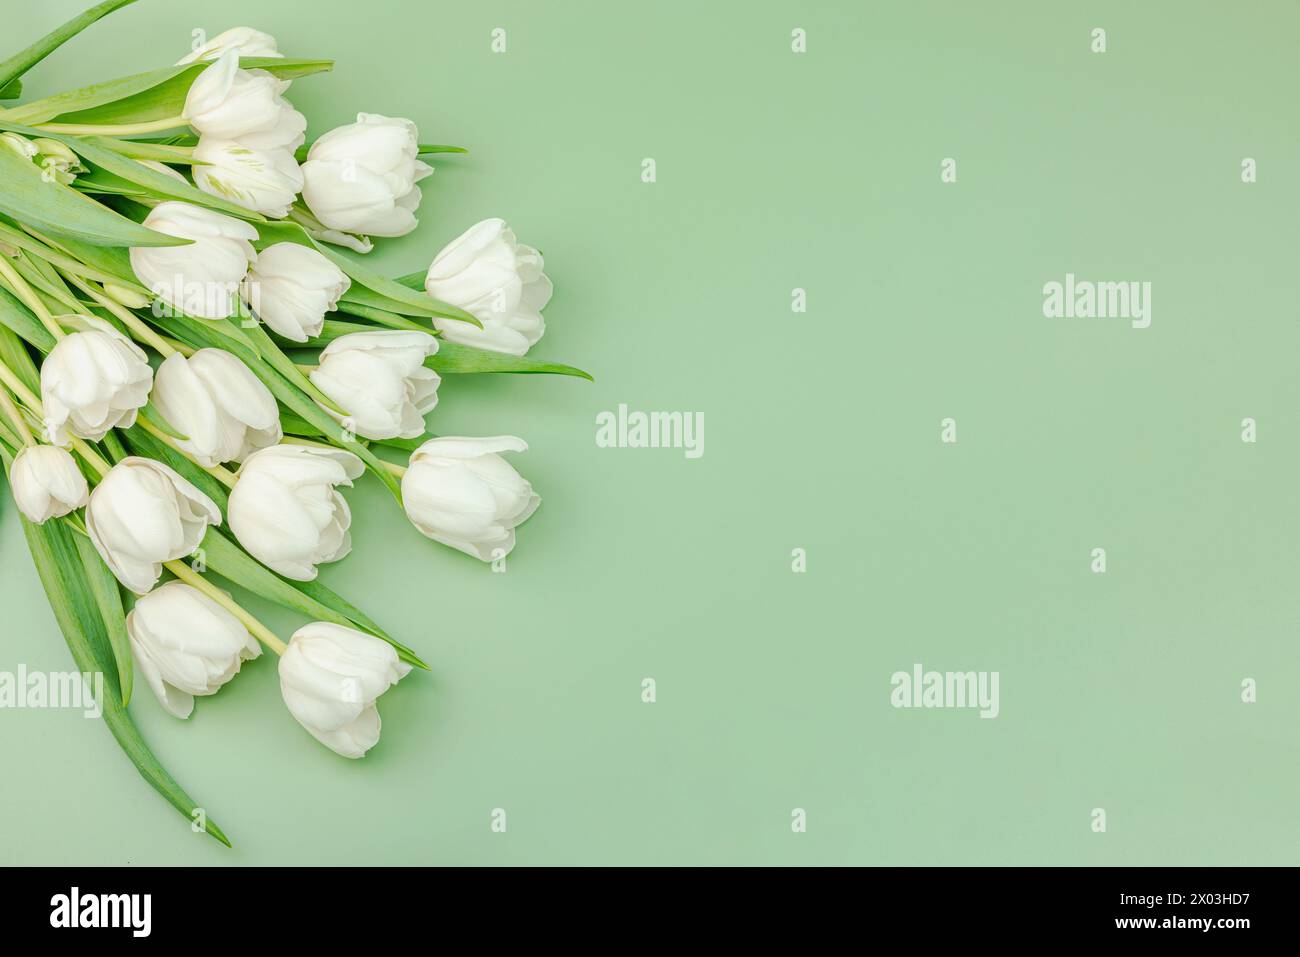 Ein Strauß weißer Tulpen auf pastellgrünem Hintergrund. Blühende Blumen, festliches Konzept für Muttertag oder Valentinstag. Grußkarte, Ostern f Stockfoto